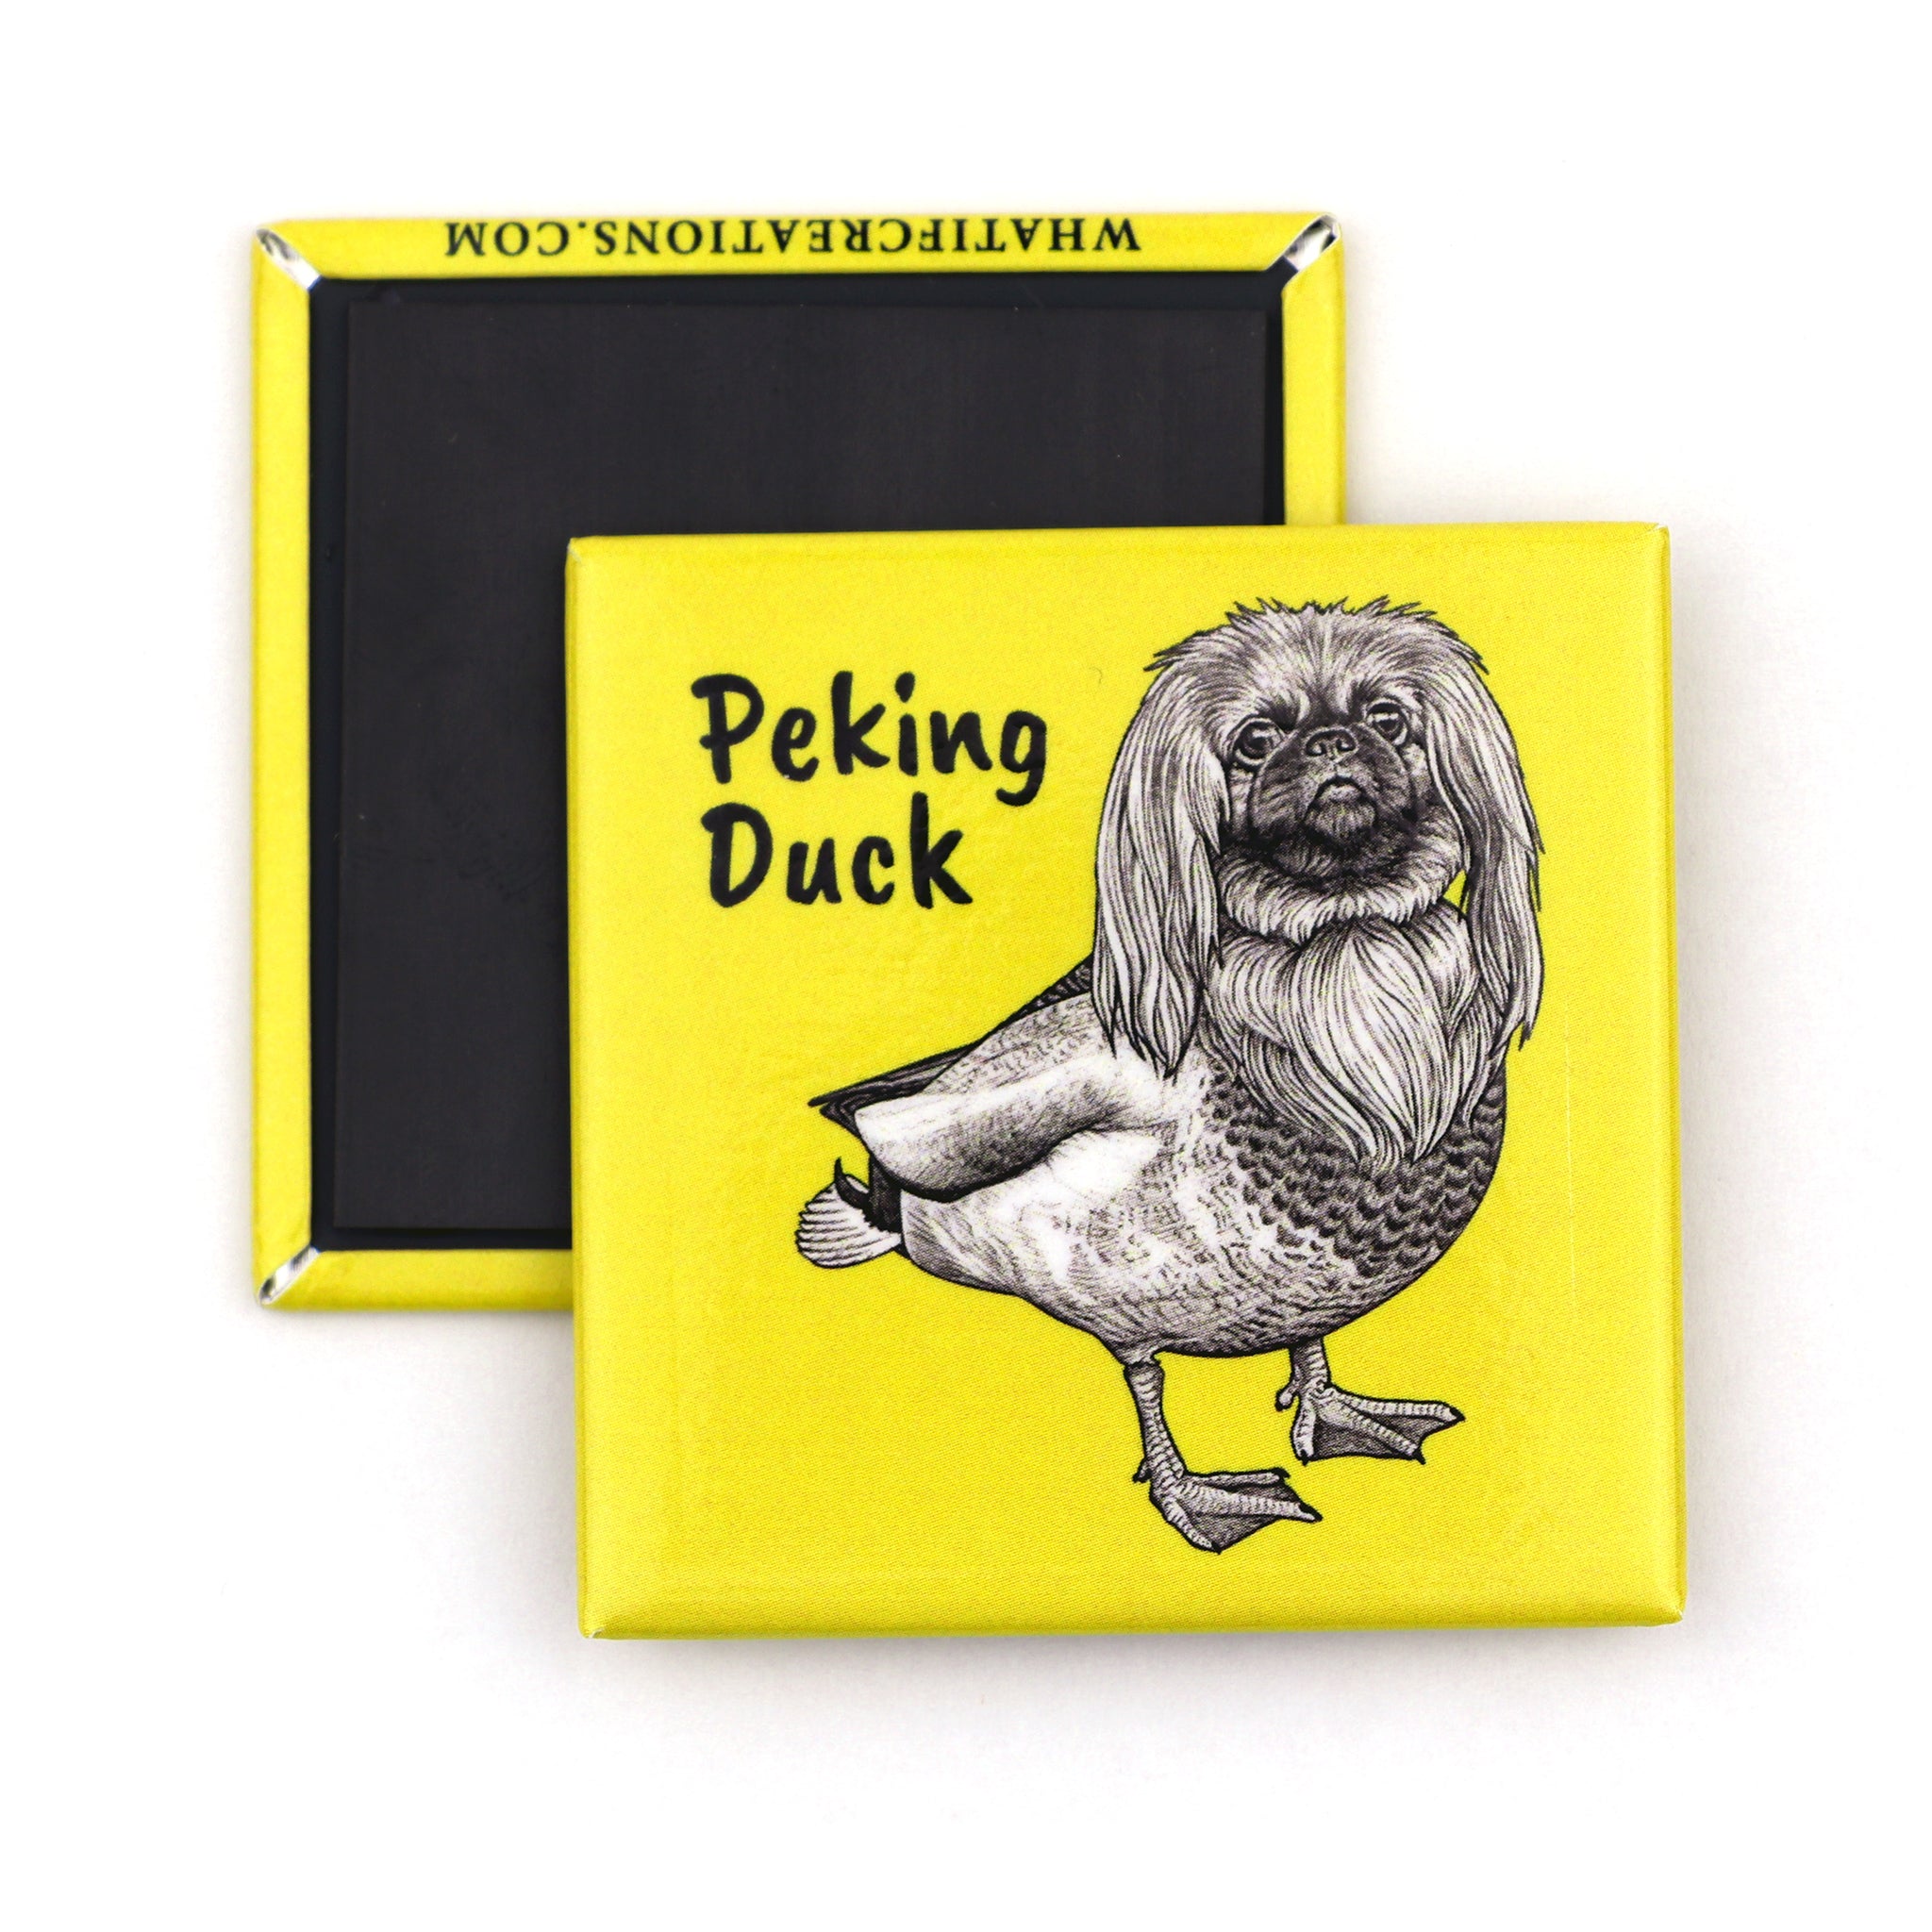 Peking Duck | Pekingese + Duck Hybrid Animal | 2" Fridge Magnet